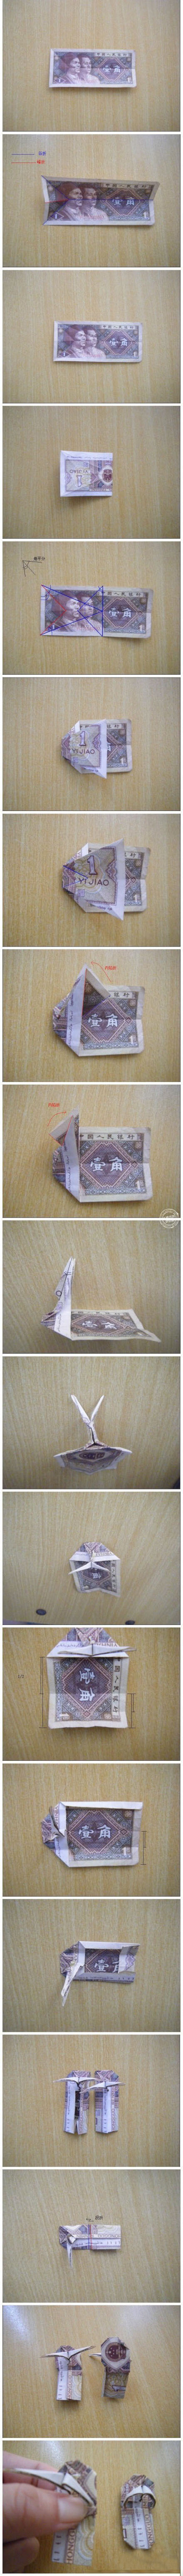 可爱的小拖鞋折纸--人民币折纸教程图解